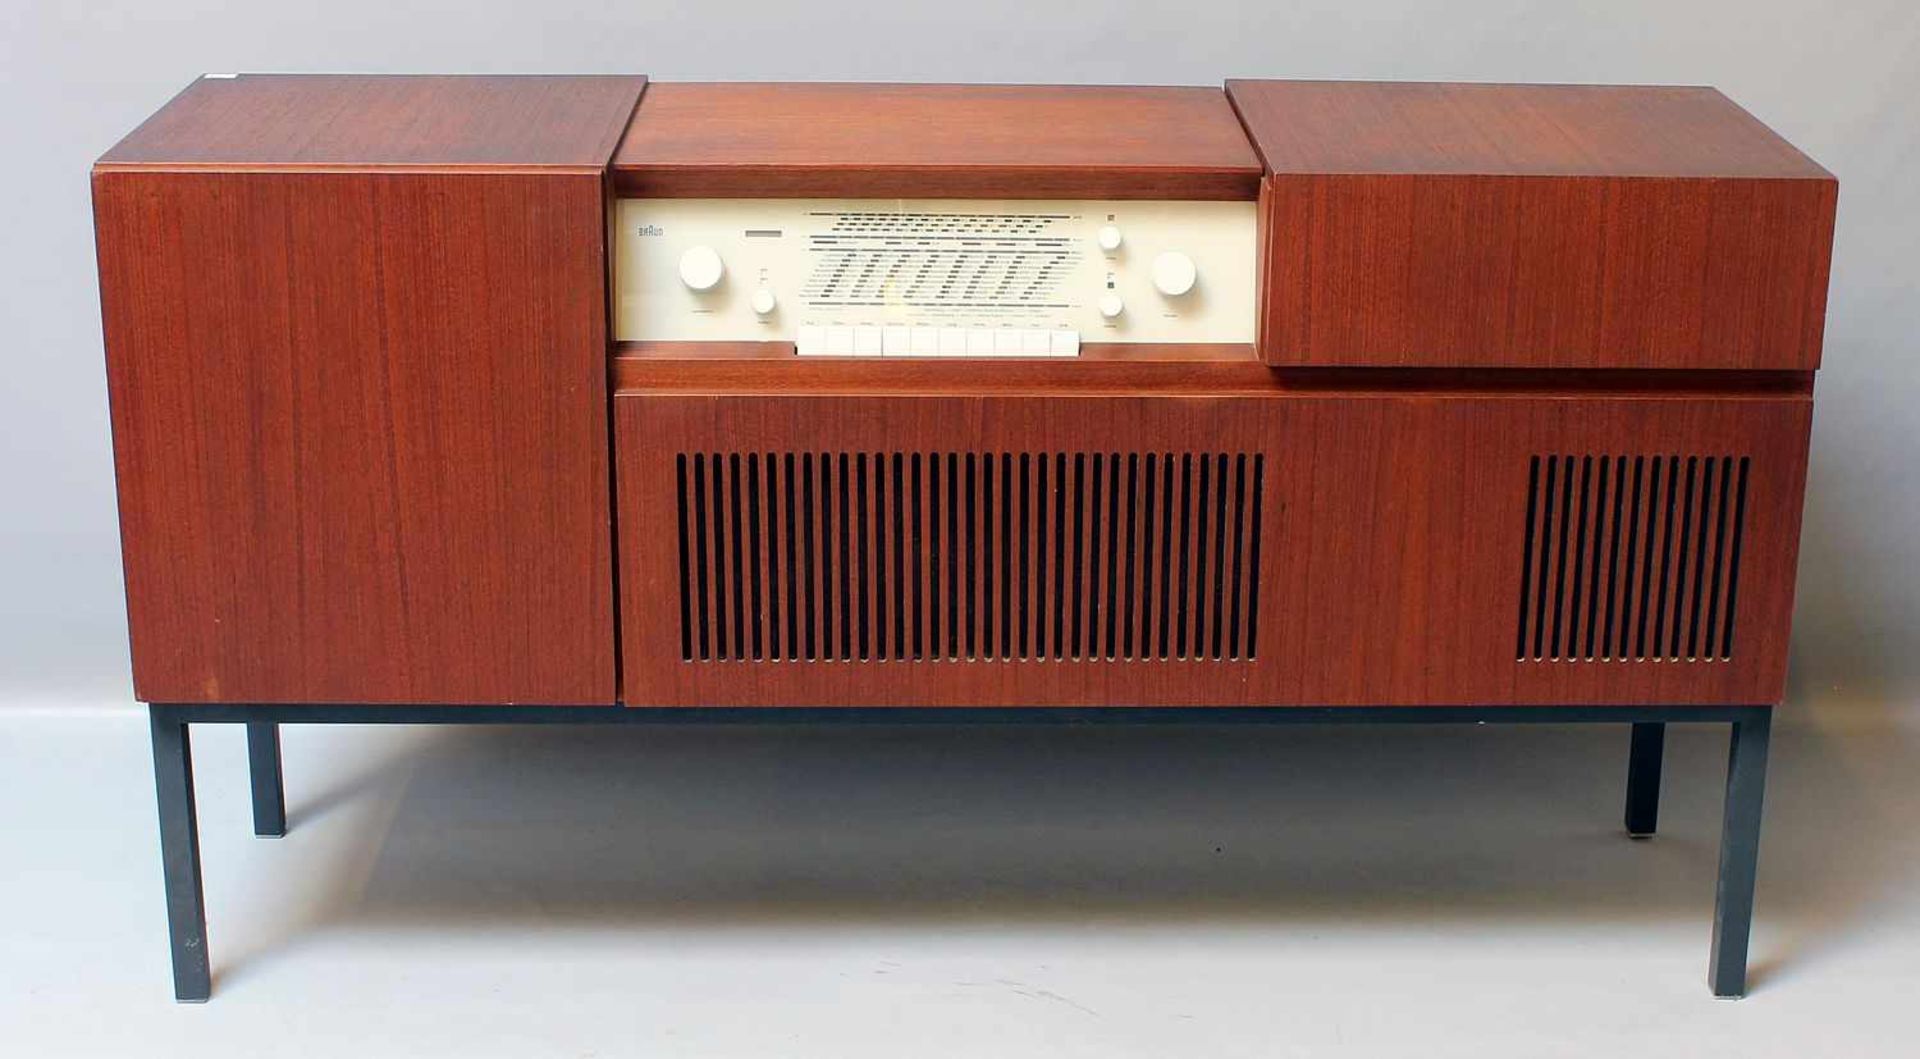 Musiktruhe "Braun HM 5-7", Entwurf Herbert Hirche.Holzgehäuse auf grau gelacktem Eisengestell. Radio